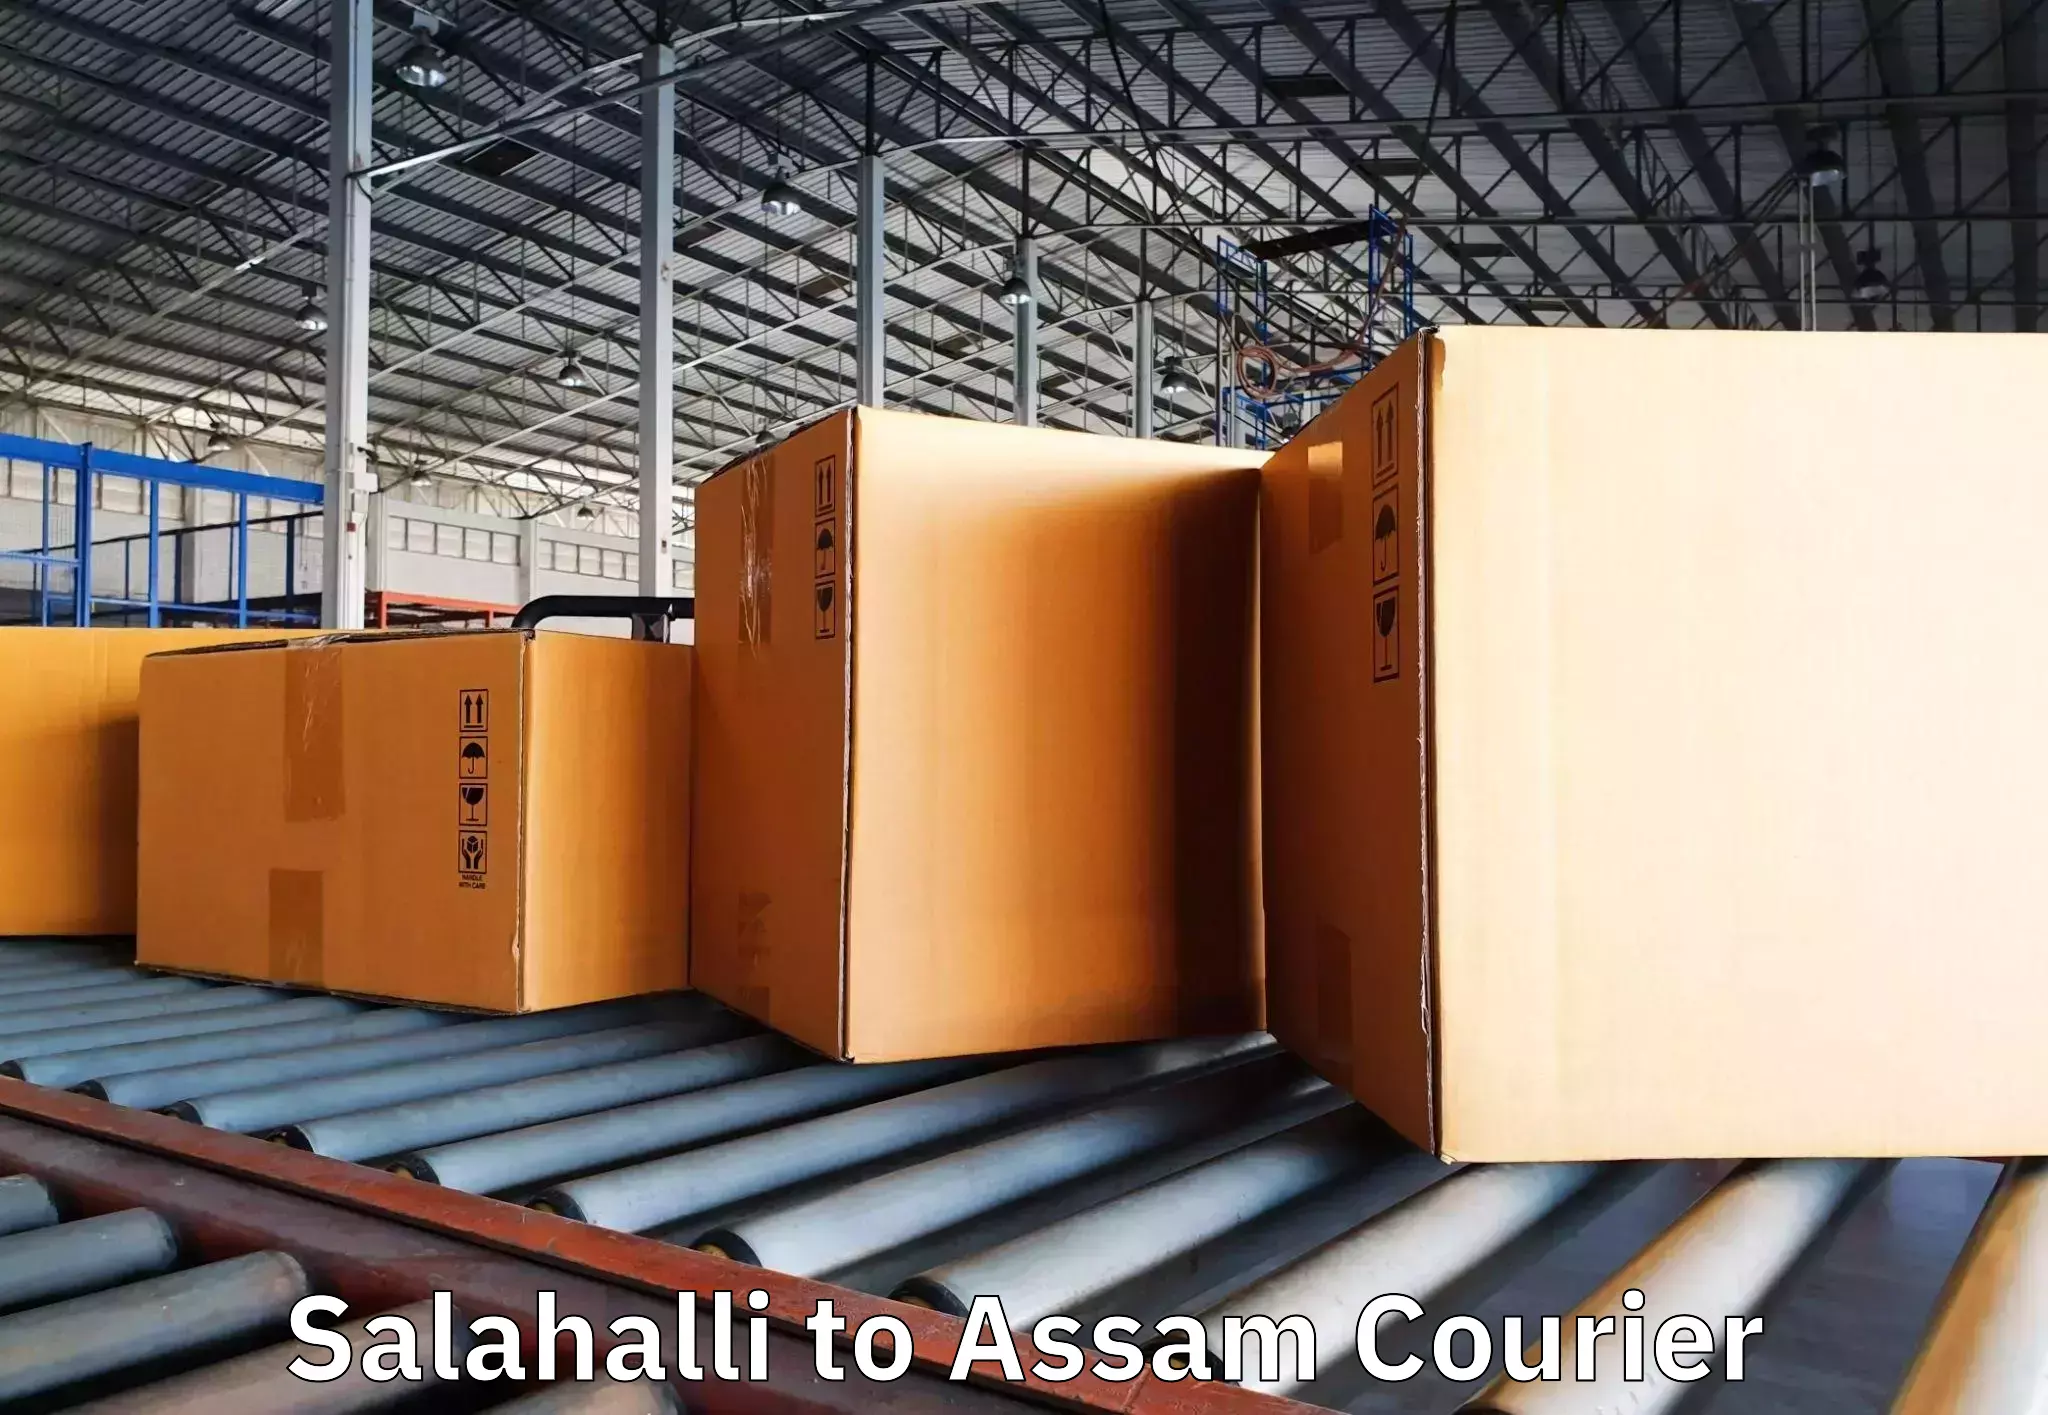 Skilled furniture movers Salahalli to Dhekiajuli